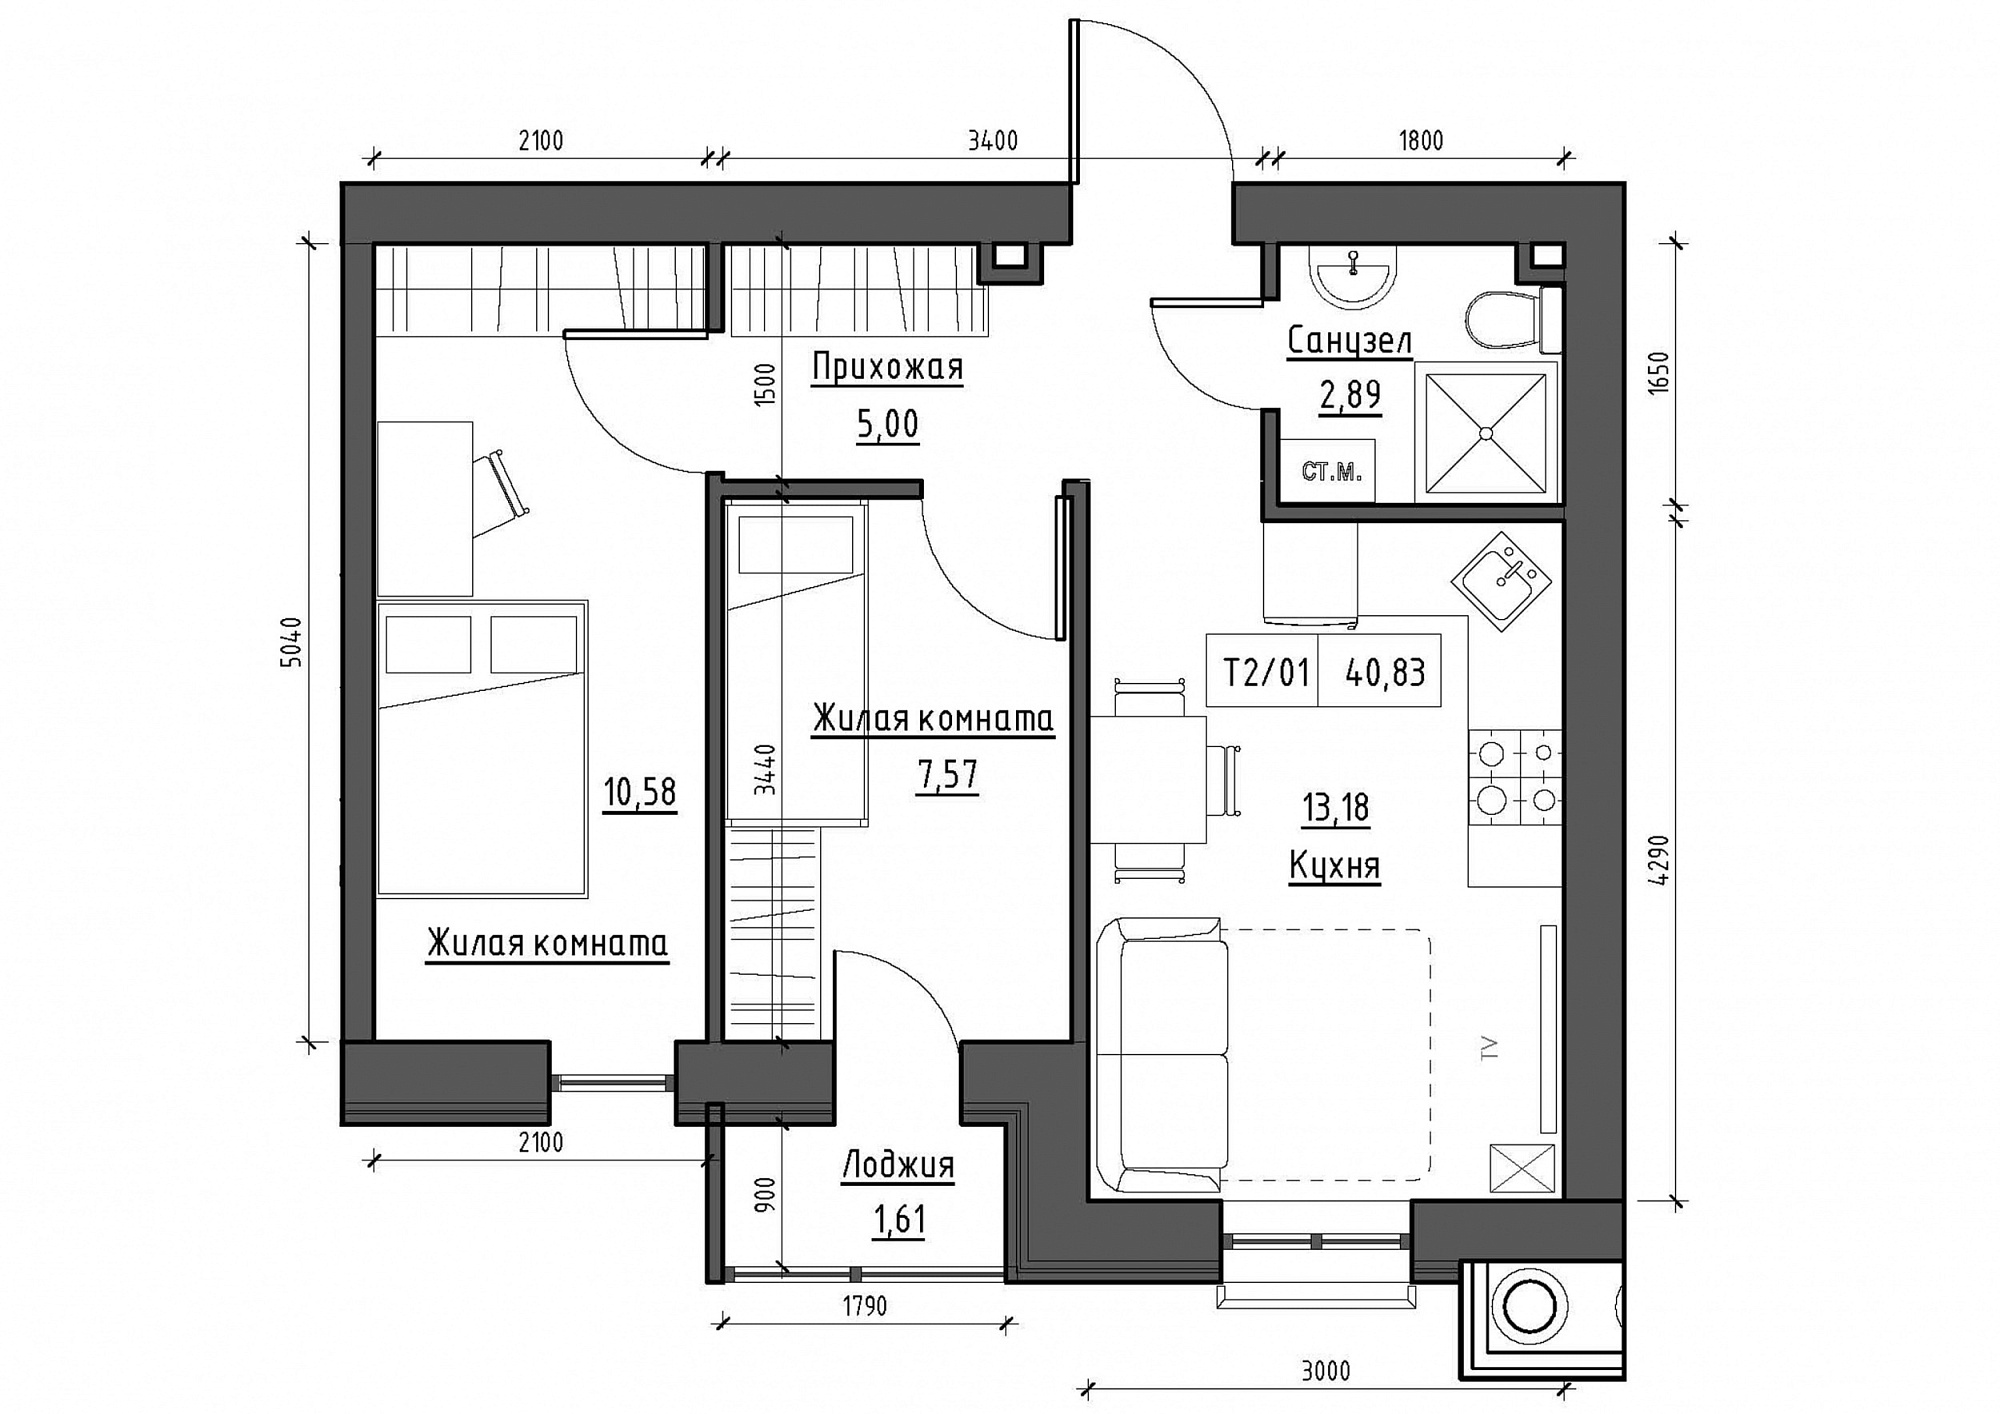 Планування 2-к квартира площею 40.83м2, KS-011-01/0011.